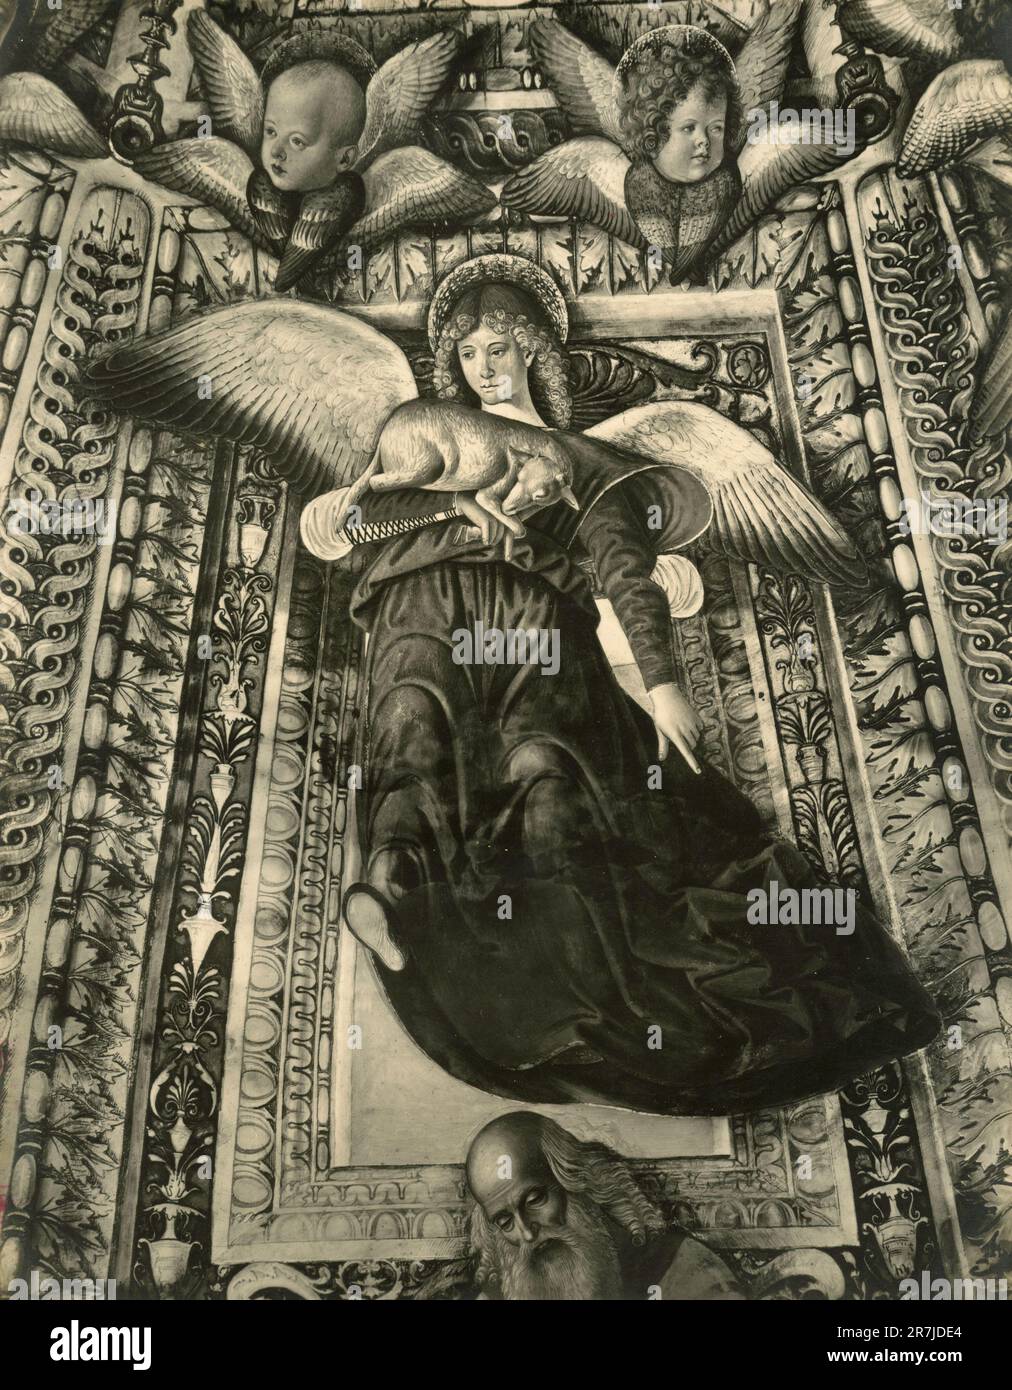 Angel carrying a lamb, painting by Italian artist Melozzo da Forlì, Tesoro Chapel, Loreto, Italy 1900s Stock Photo